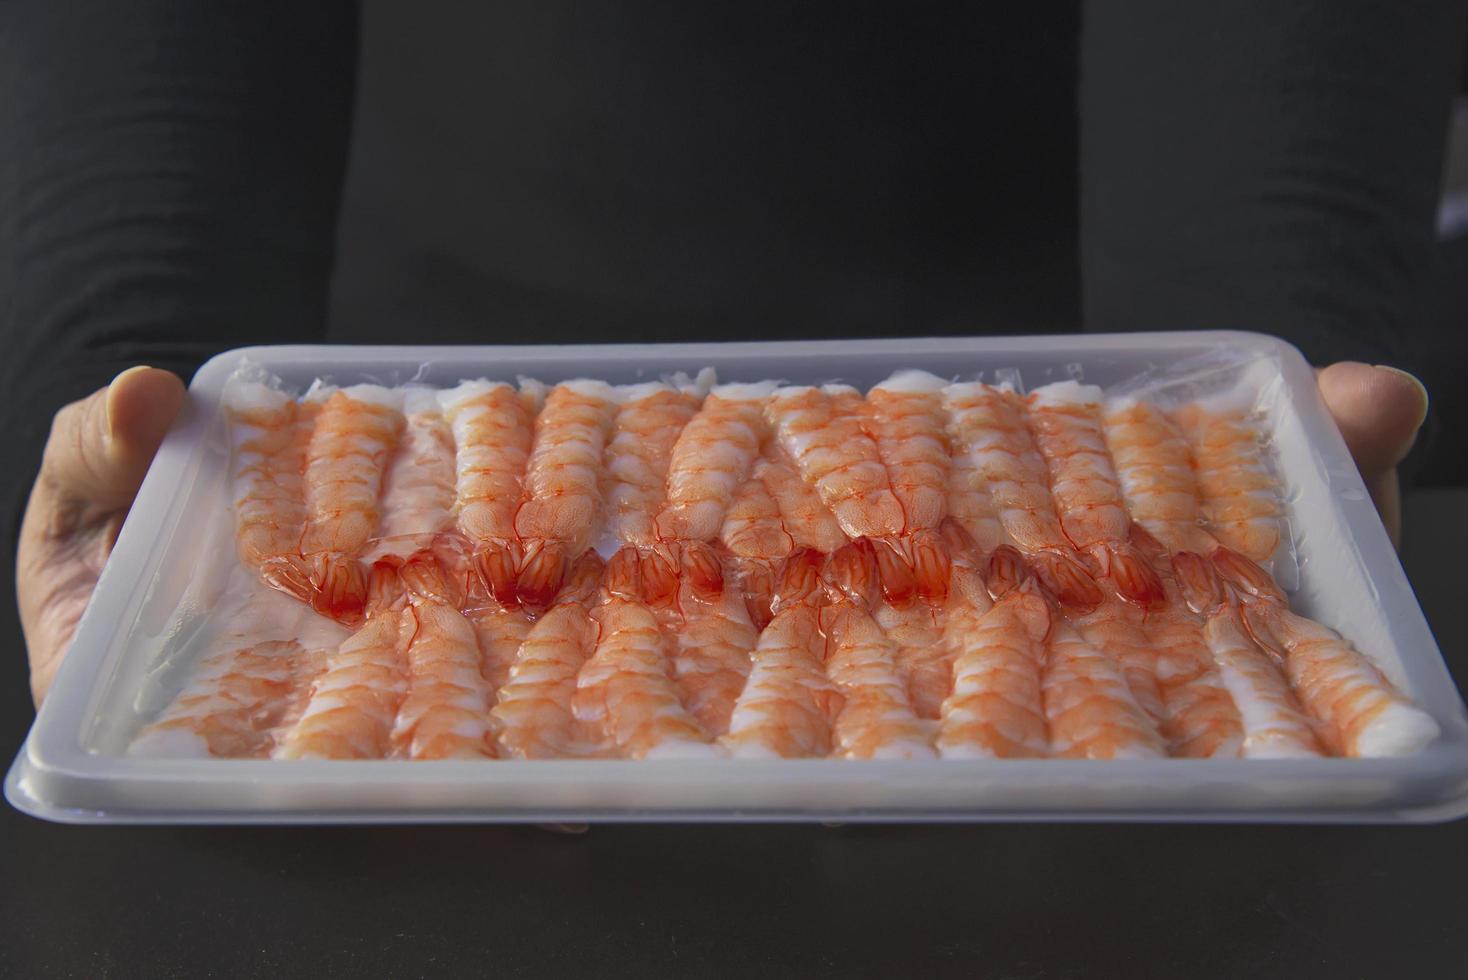 le chef prépare des crevettes sushi pour faire un menu de cuisine japonaise, un rouleau de sushi maki japonais servant dans un restaurant oriental, divers concepts d'ensemble d'alimentation saine mixte de luxe assortis photo